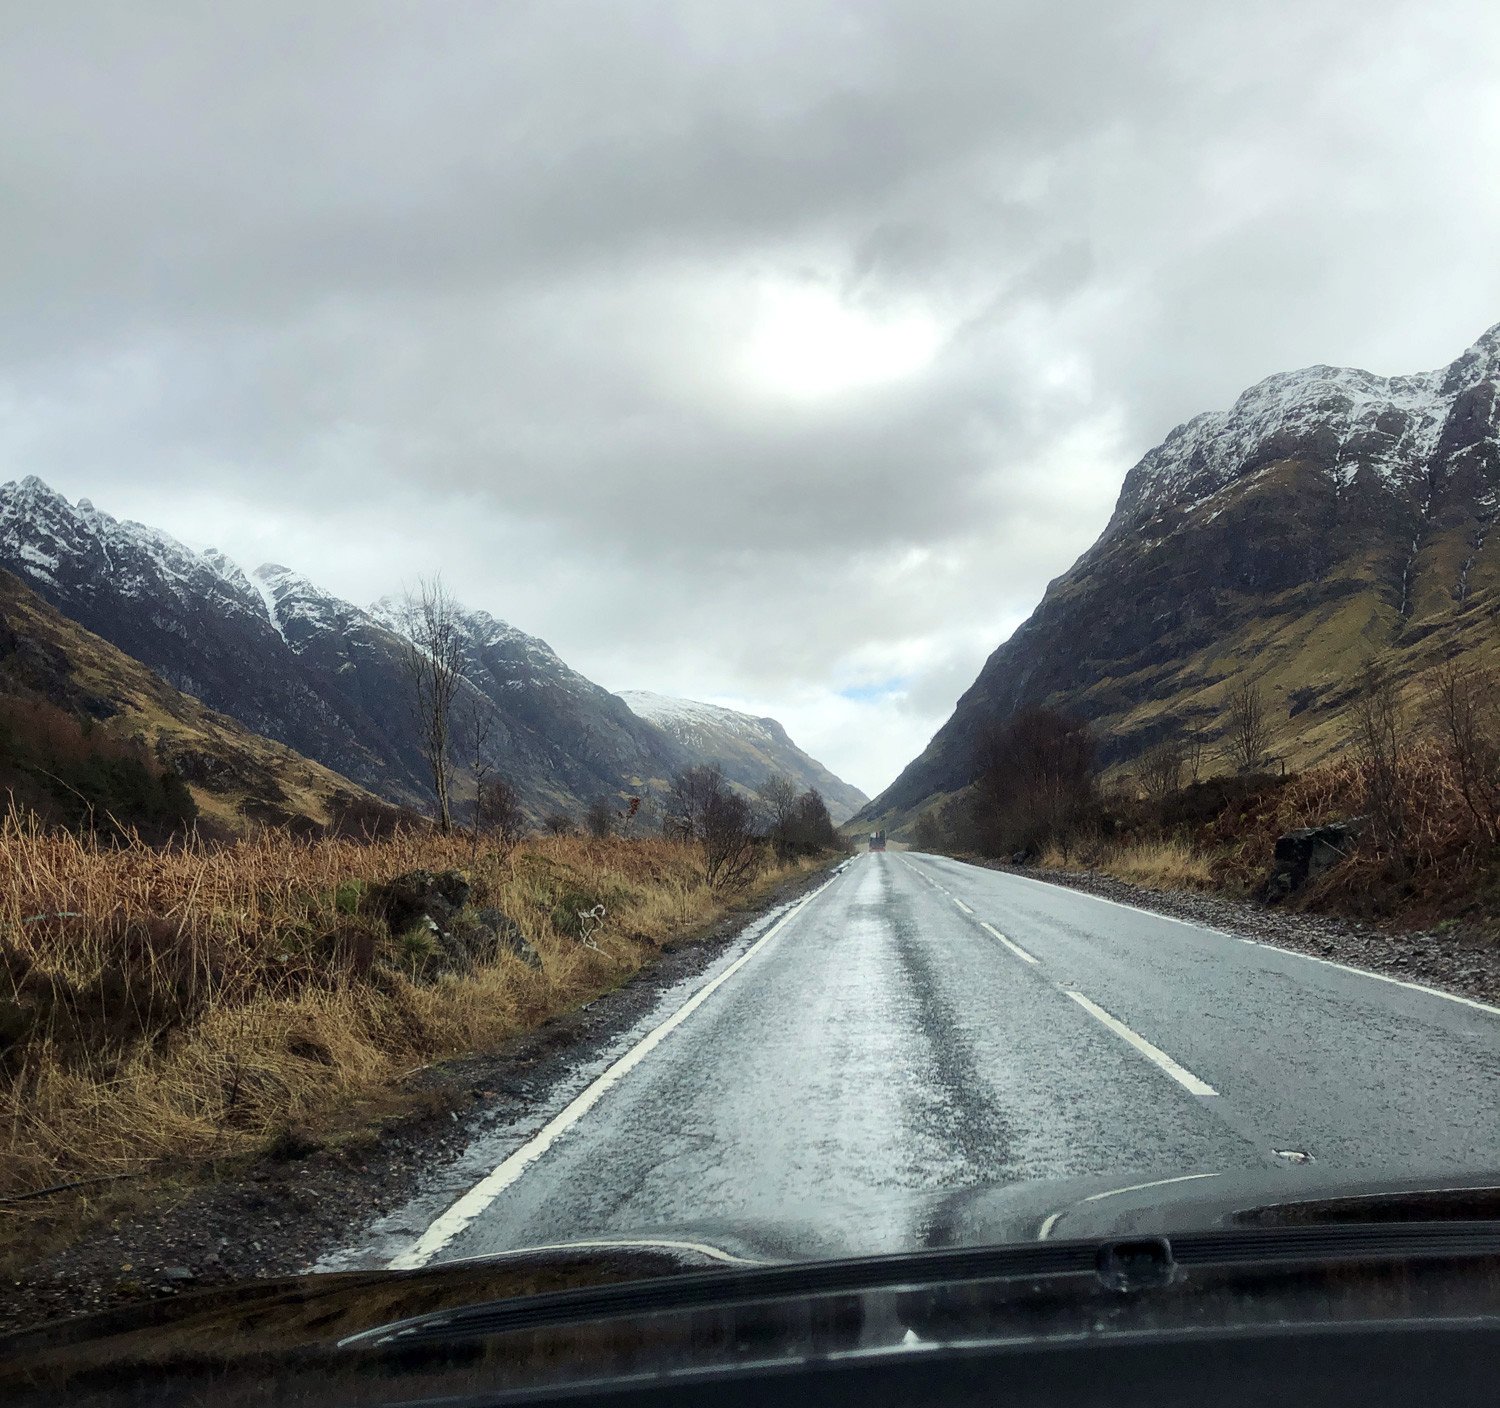 The road through Glen Coe, Scotland